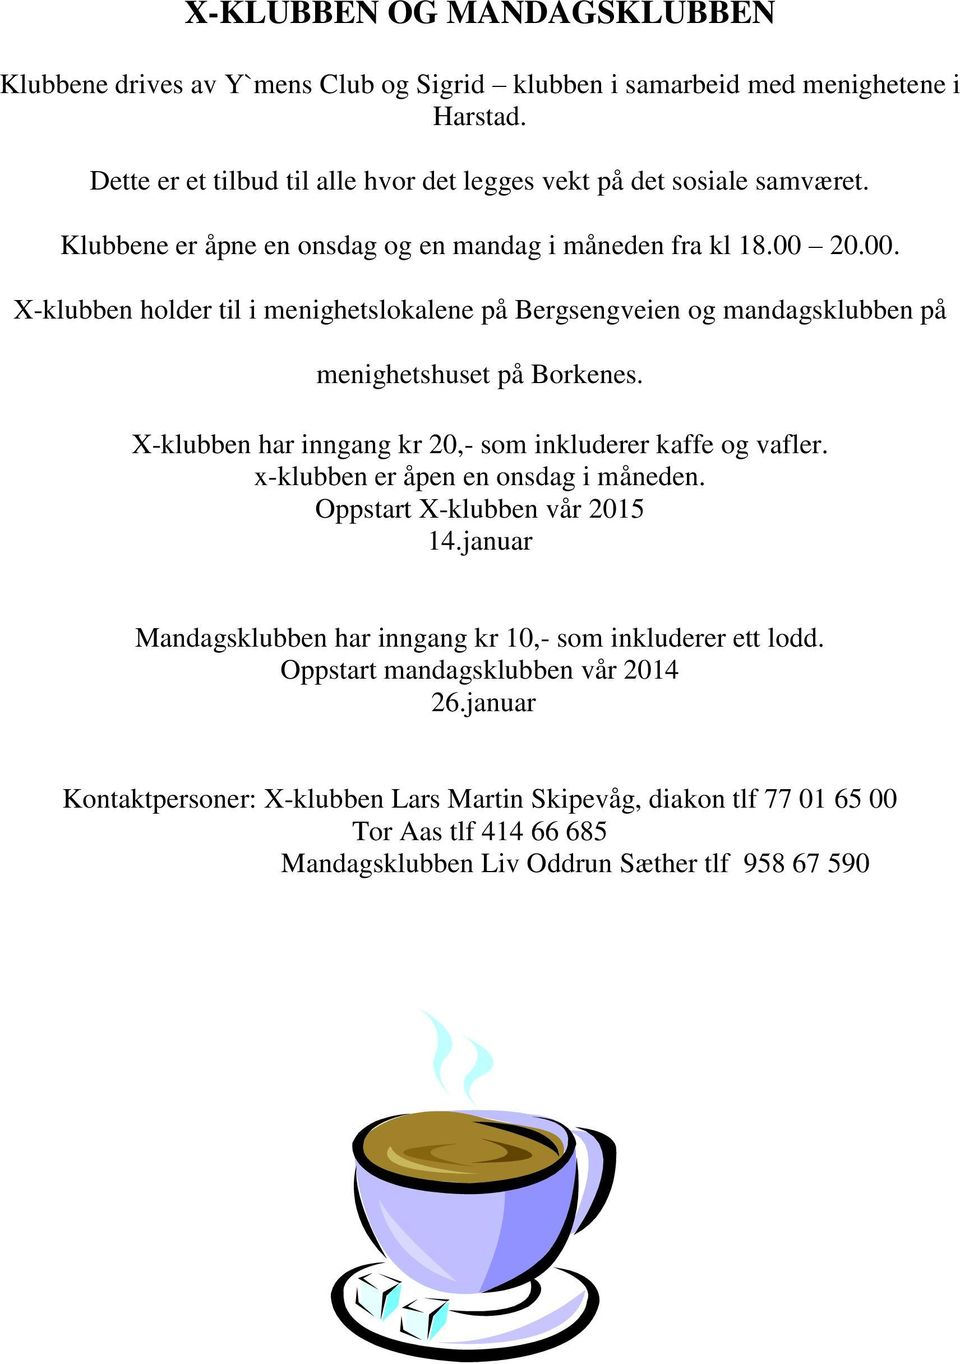 20.00. X-klubben holder til i menighetslokalene på Bergsengveien og mandagsklubben på menighetshuset på Borkenes. X-klubben har inngang kr 20,- som inkluderer kaffe og vafler.